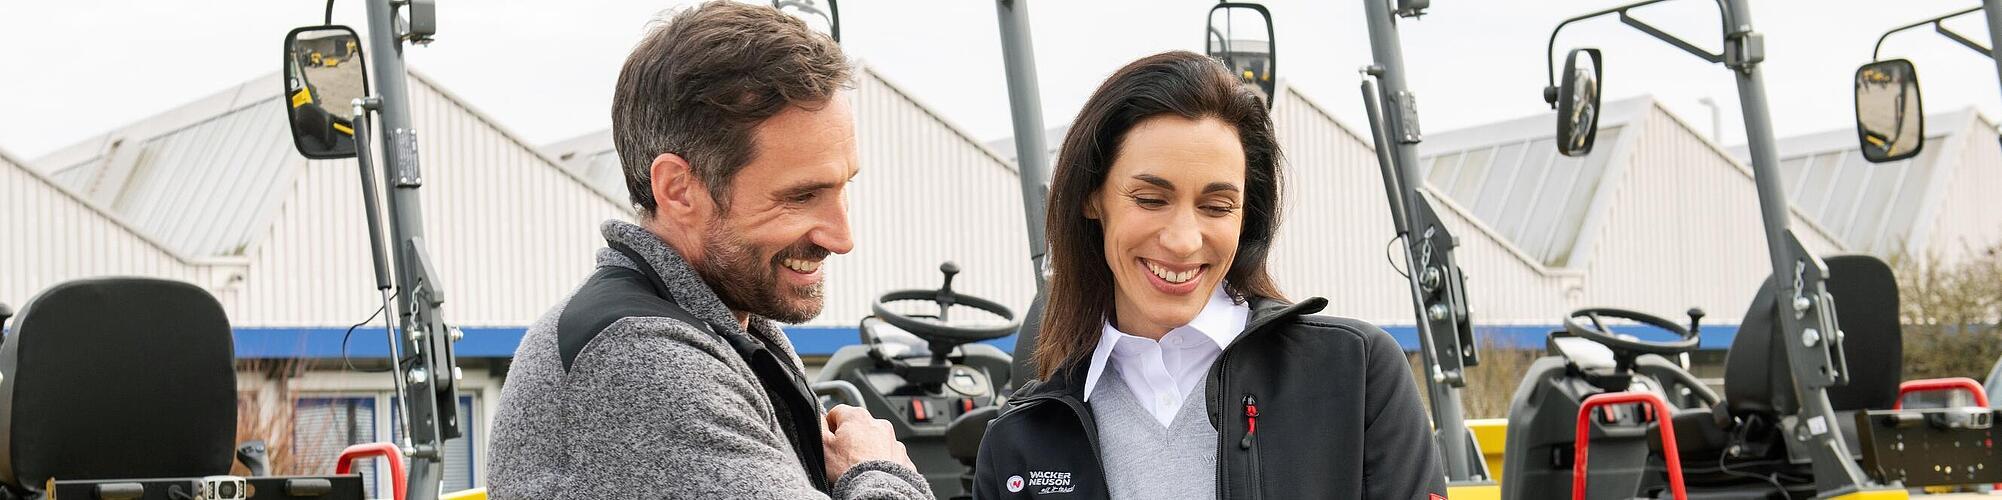 Une collaboratrice Wacker Neuson souriante et portant une tablette conseille un client souriant devant des machines de construction Wacker Neuson.